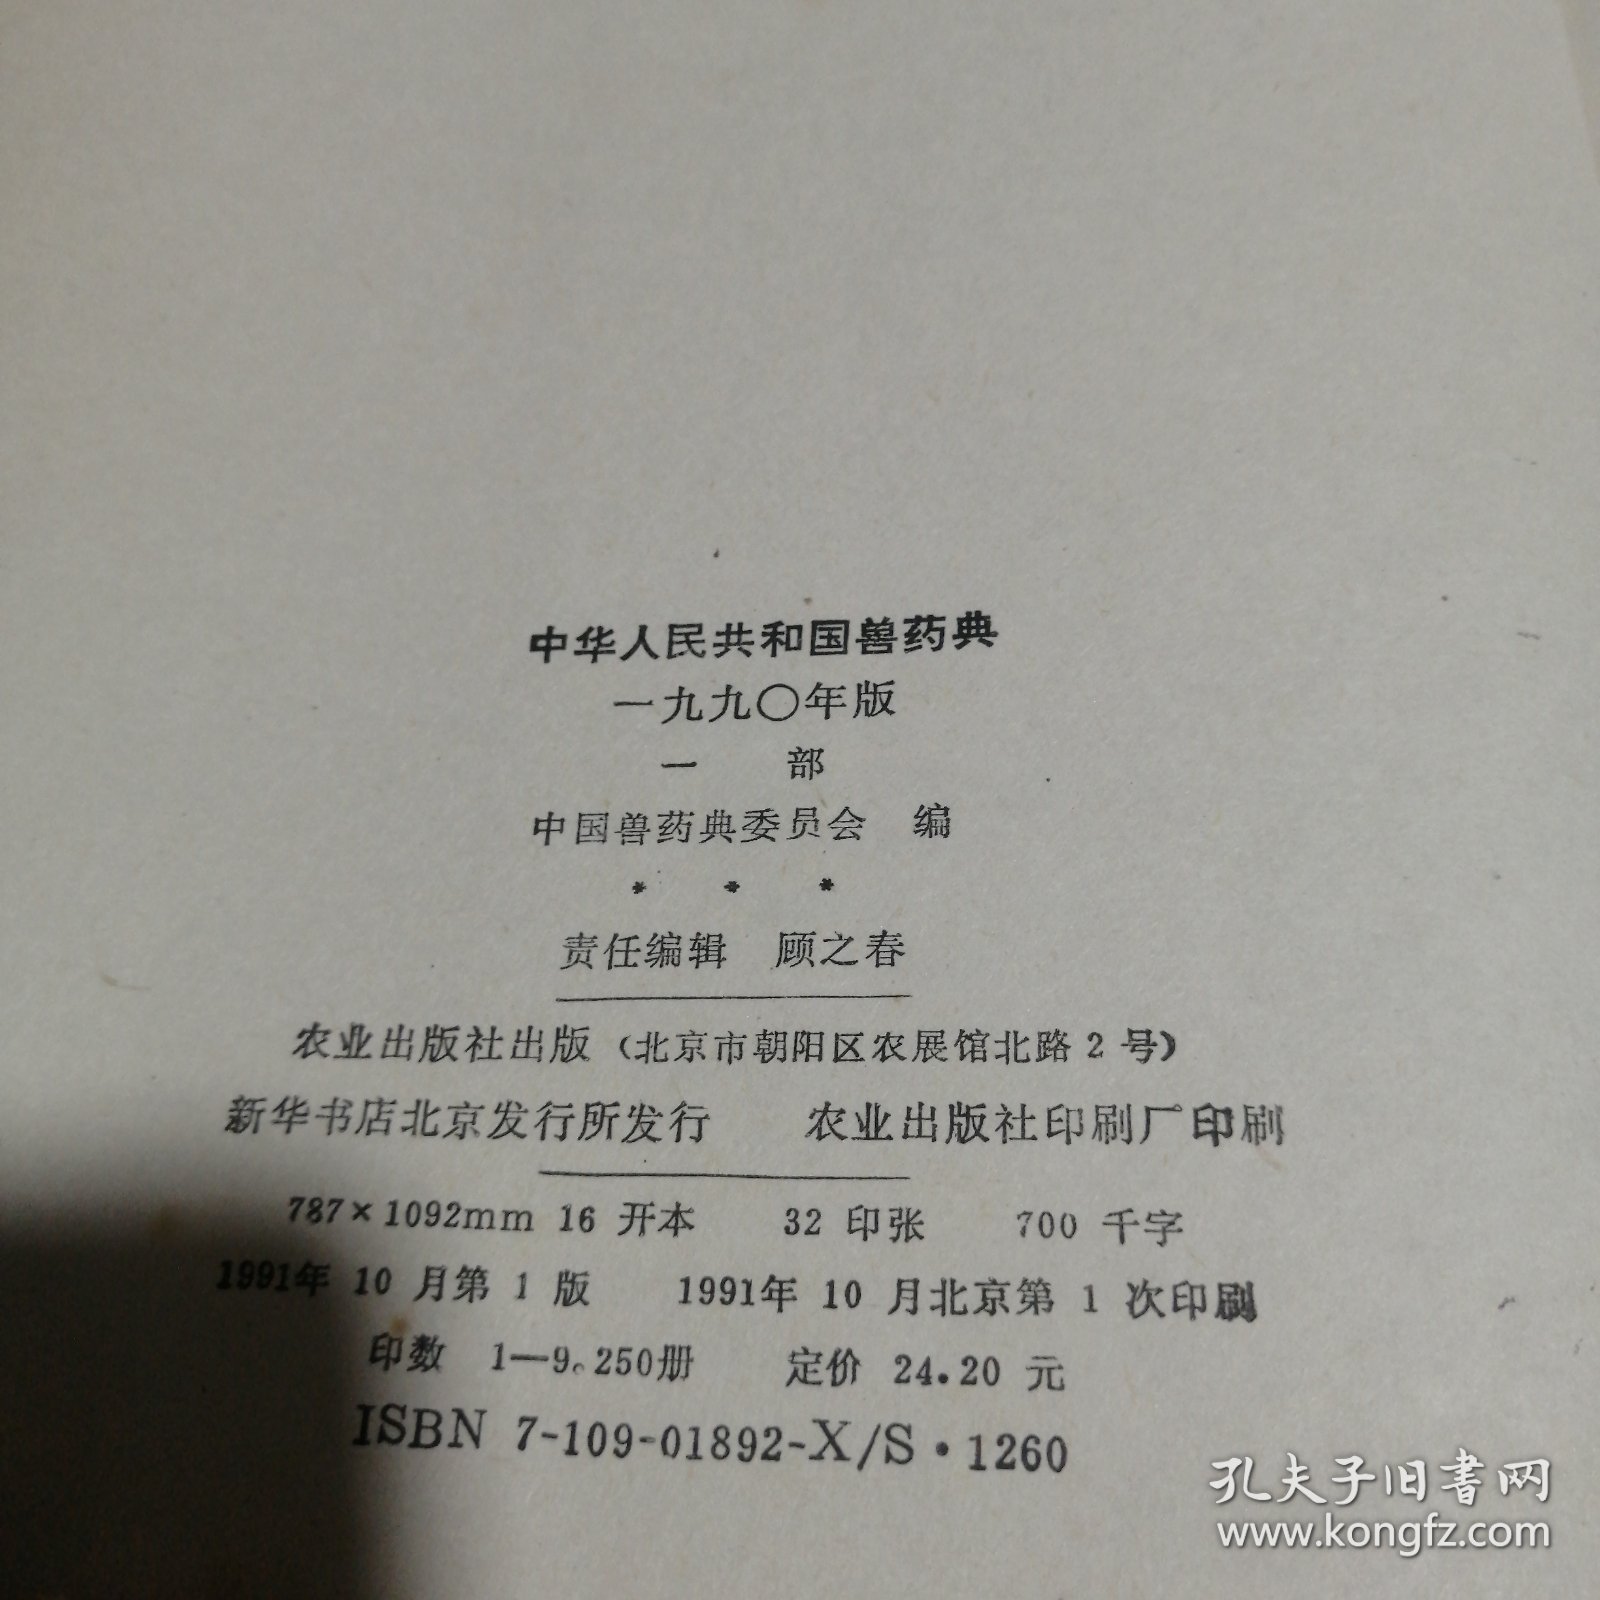 中华人民共和国兽药典:1990年版.一部